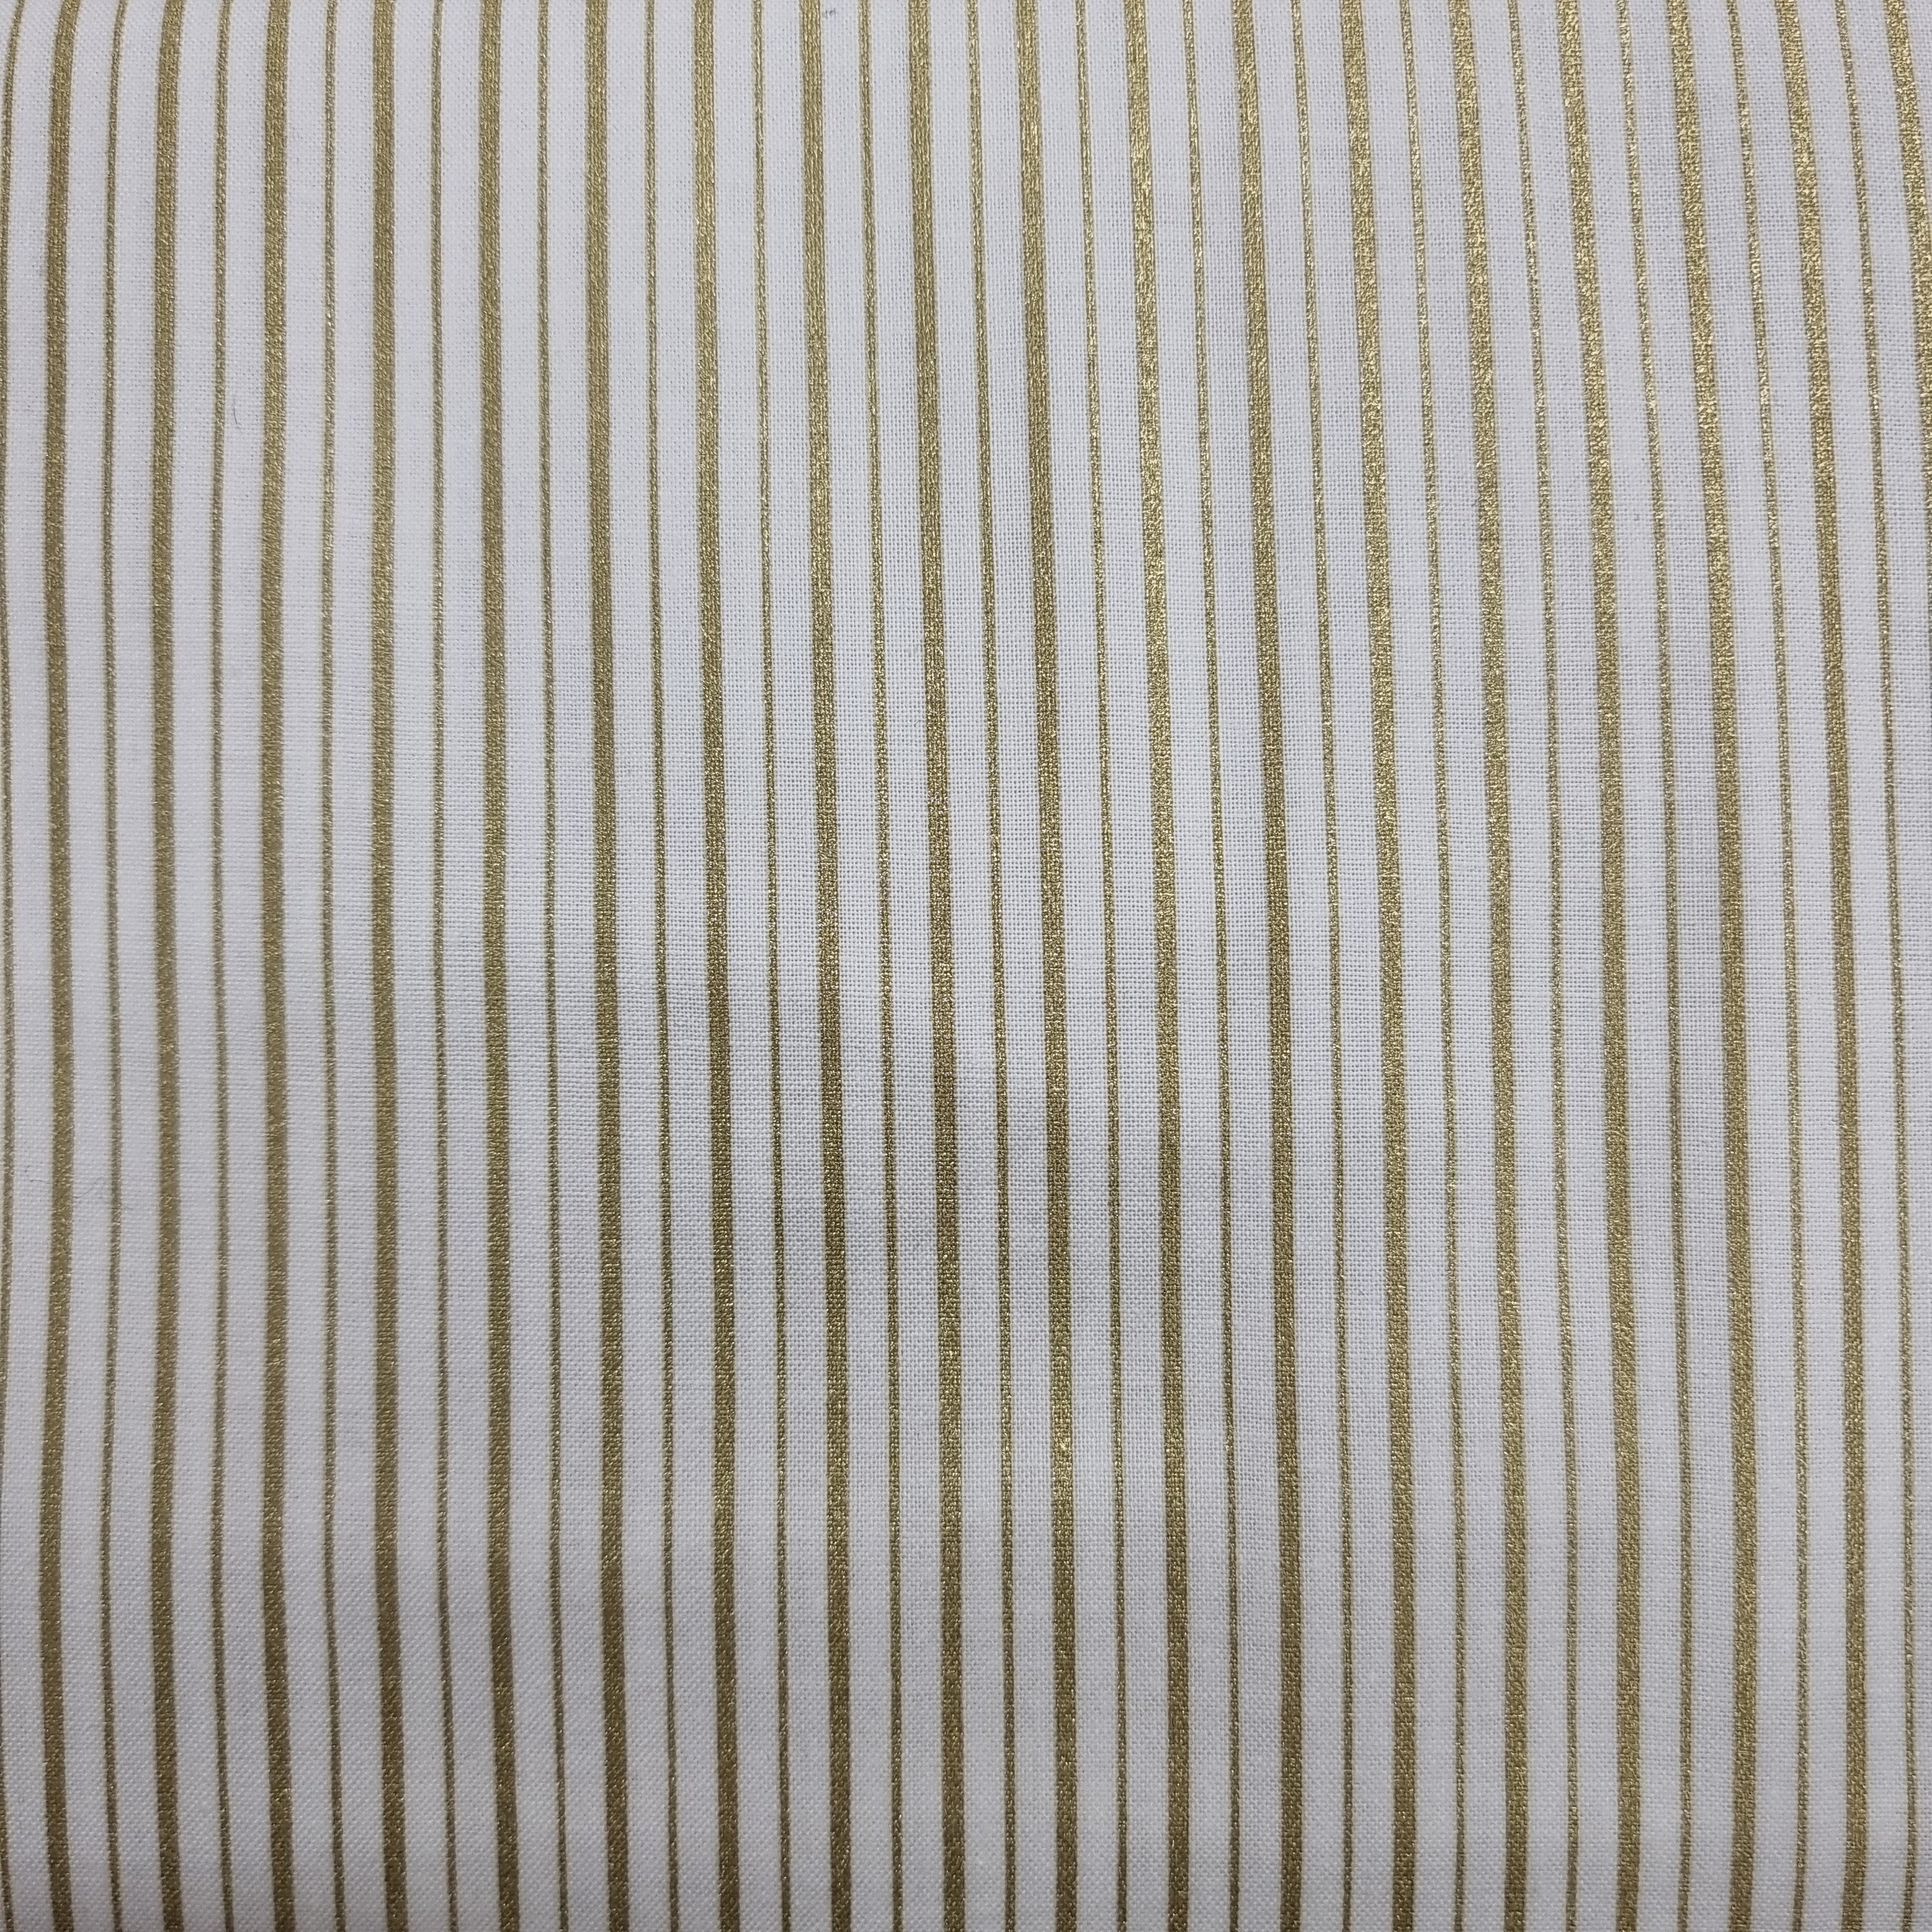 Metallic Stripes - Gold